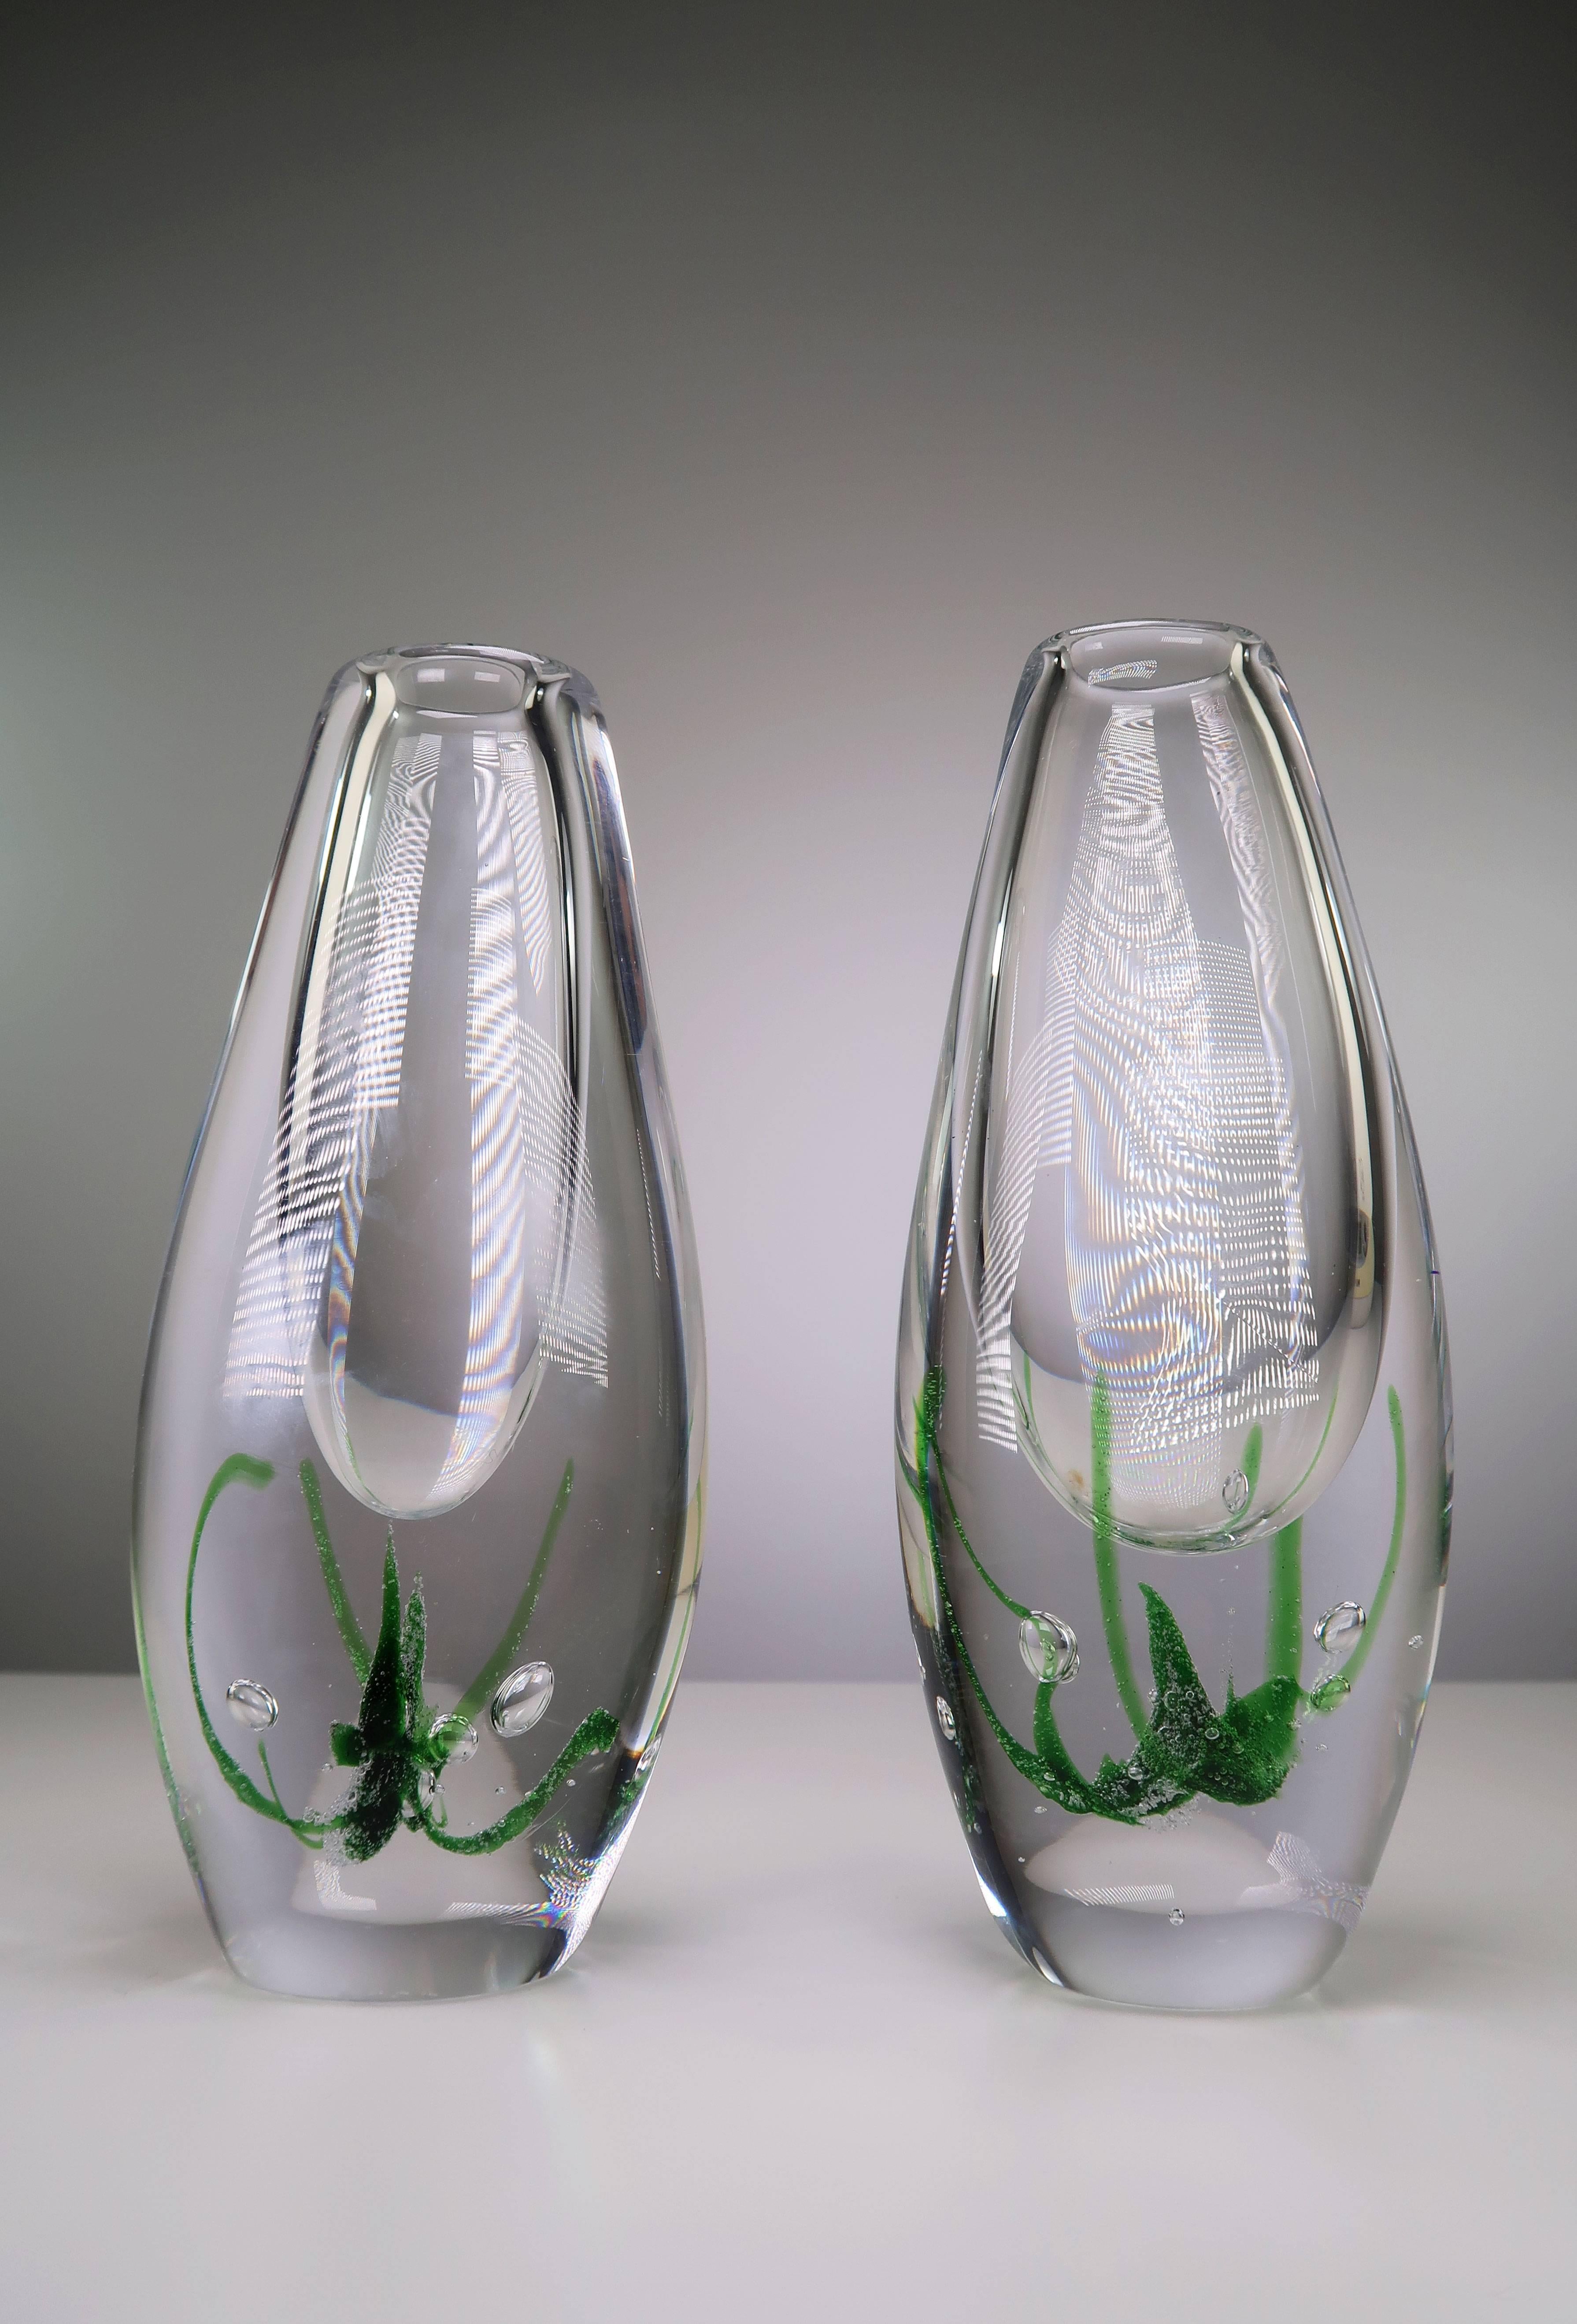 Superbe paire de vases en verre d'art suédois du milieu du siècle dernier, en forme d'algues, réalisés par l'artiste verrier suédois Vicke Lindstrand pour Kosta en 1962. Superbes exemples de la technique Mykene développée par Lindstrand dans les